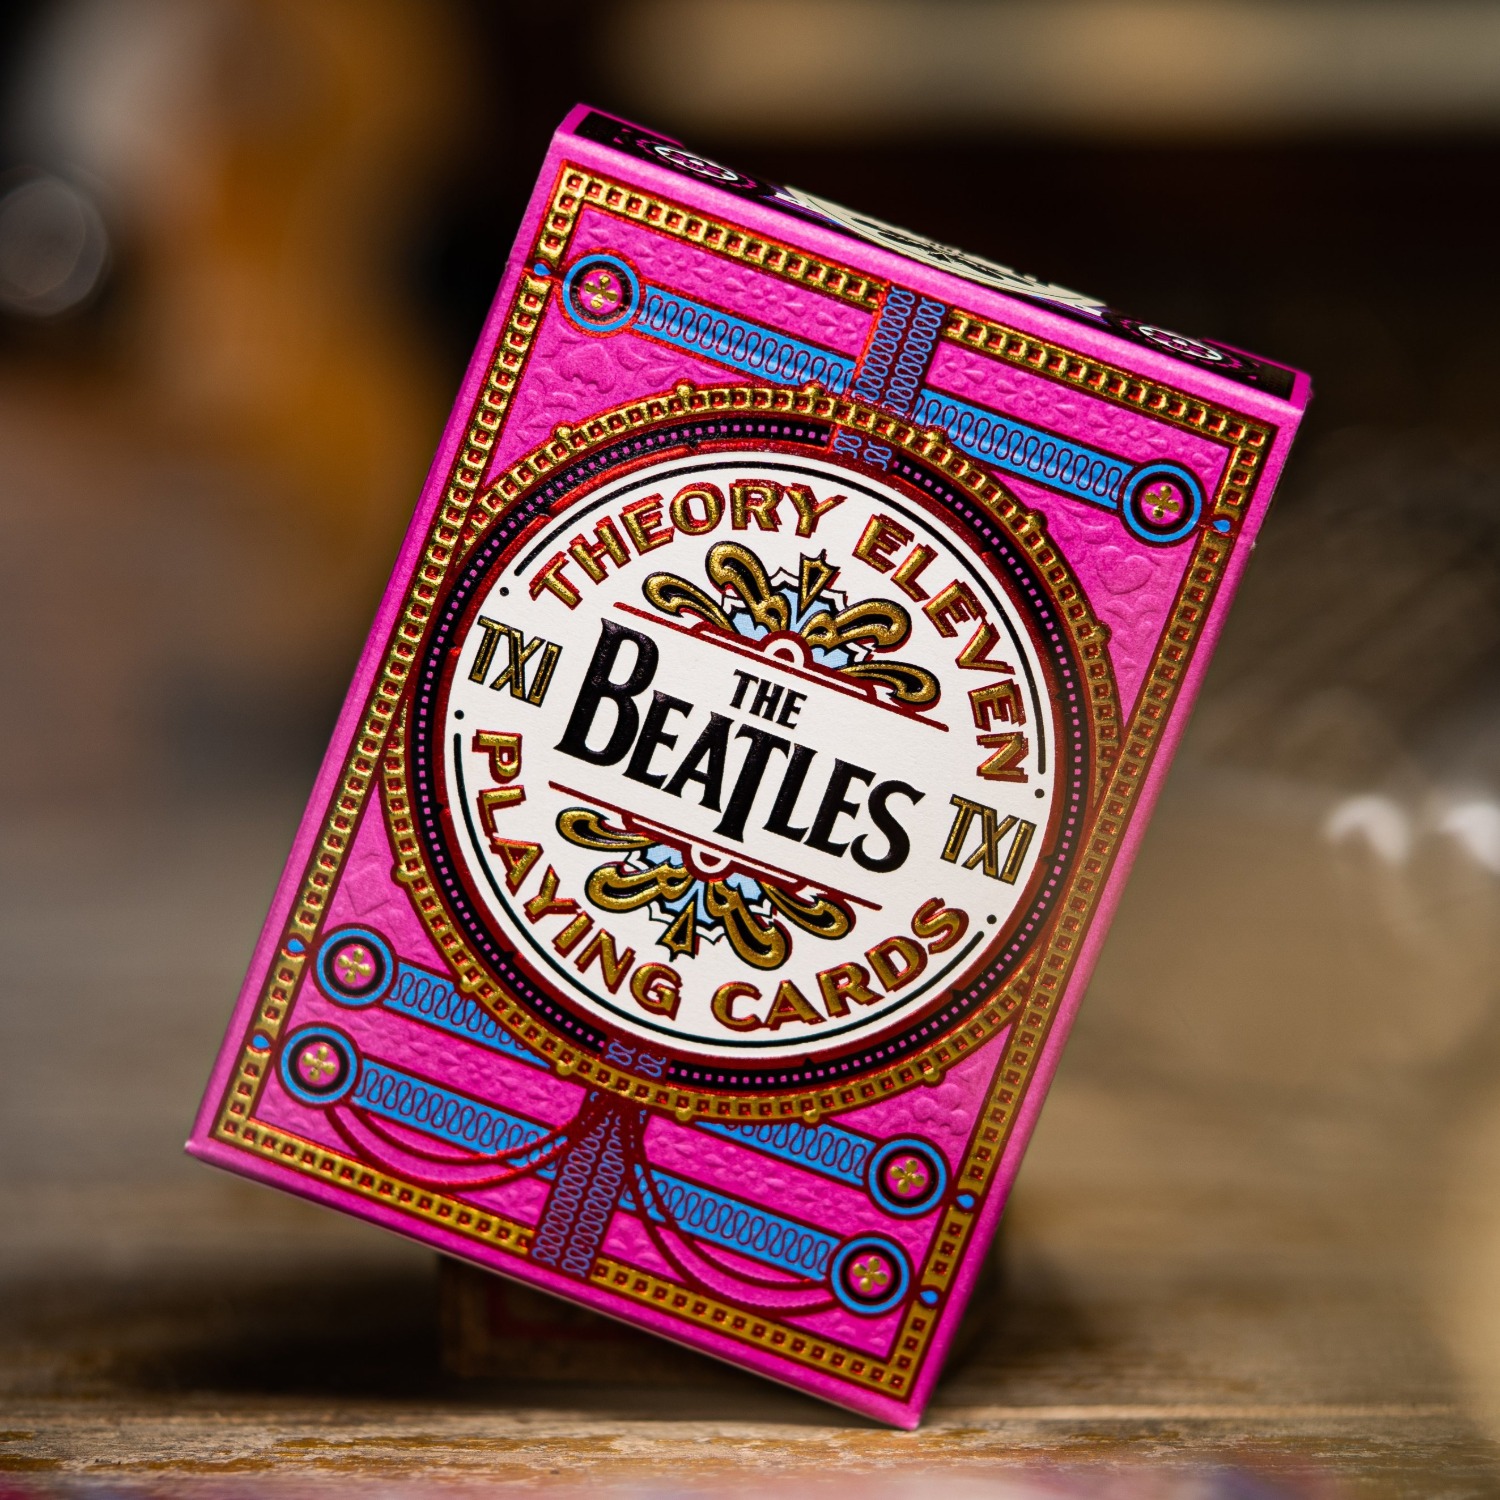 [더비틀즈/핑크]The Beatles (Pink) Playing Cards by theory11